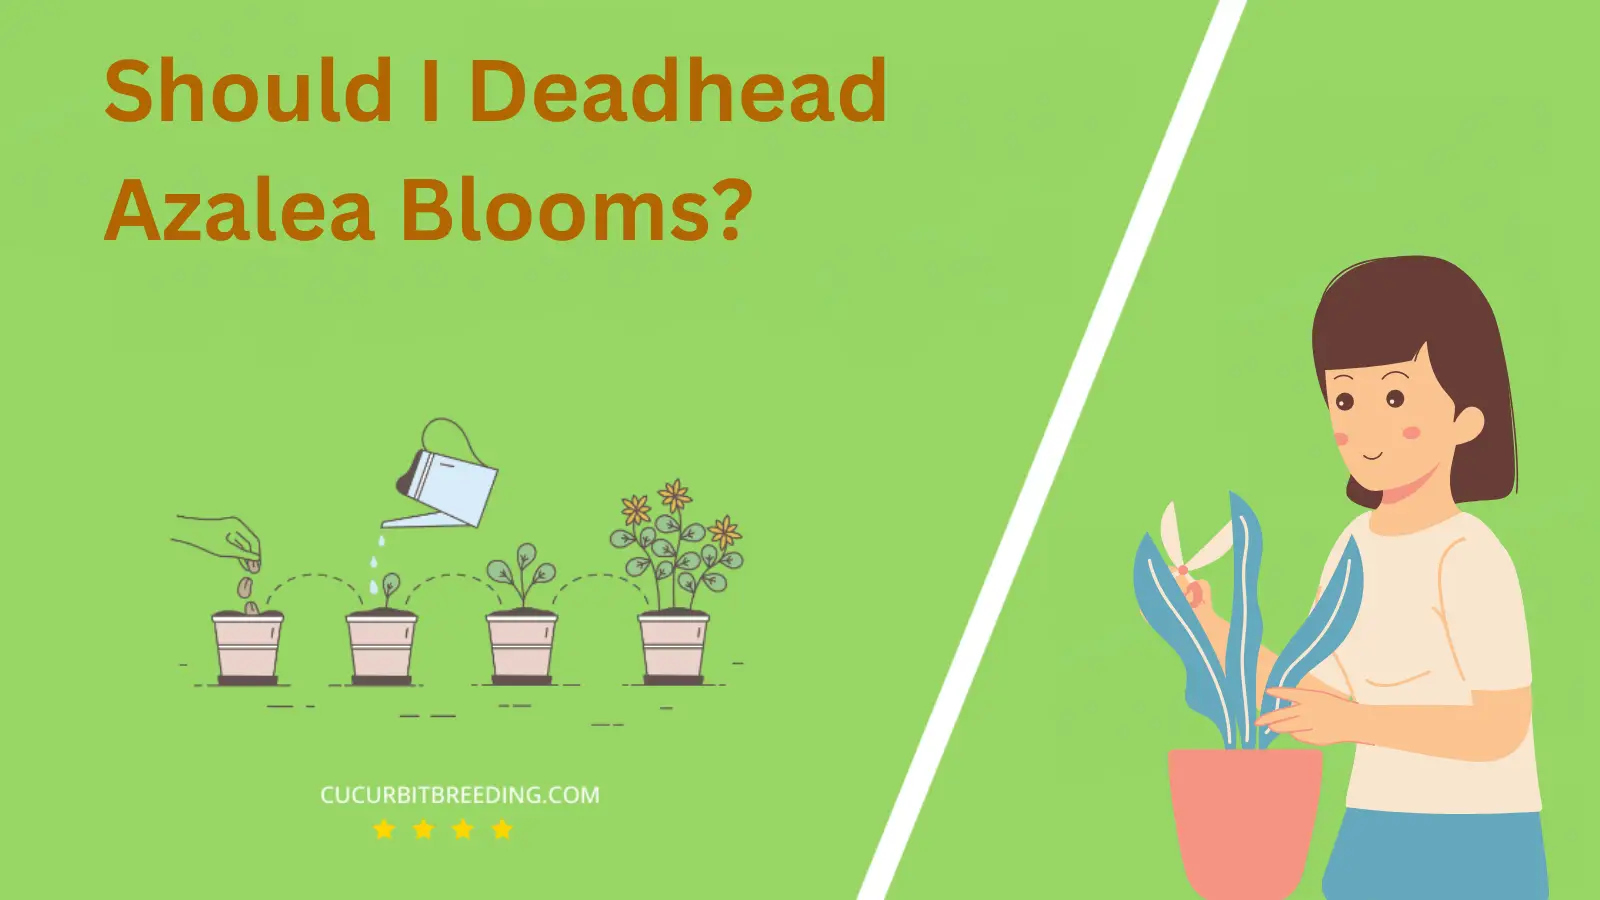 Should I Deadhead Azalea Blooms?